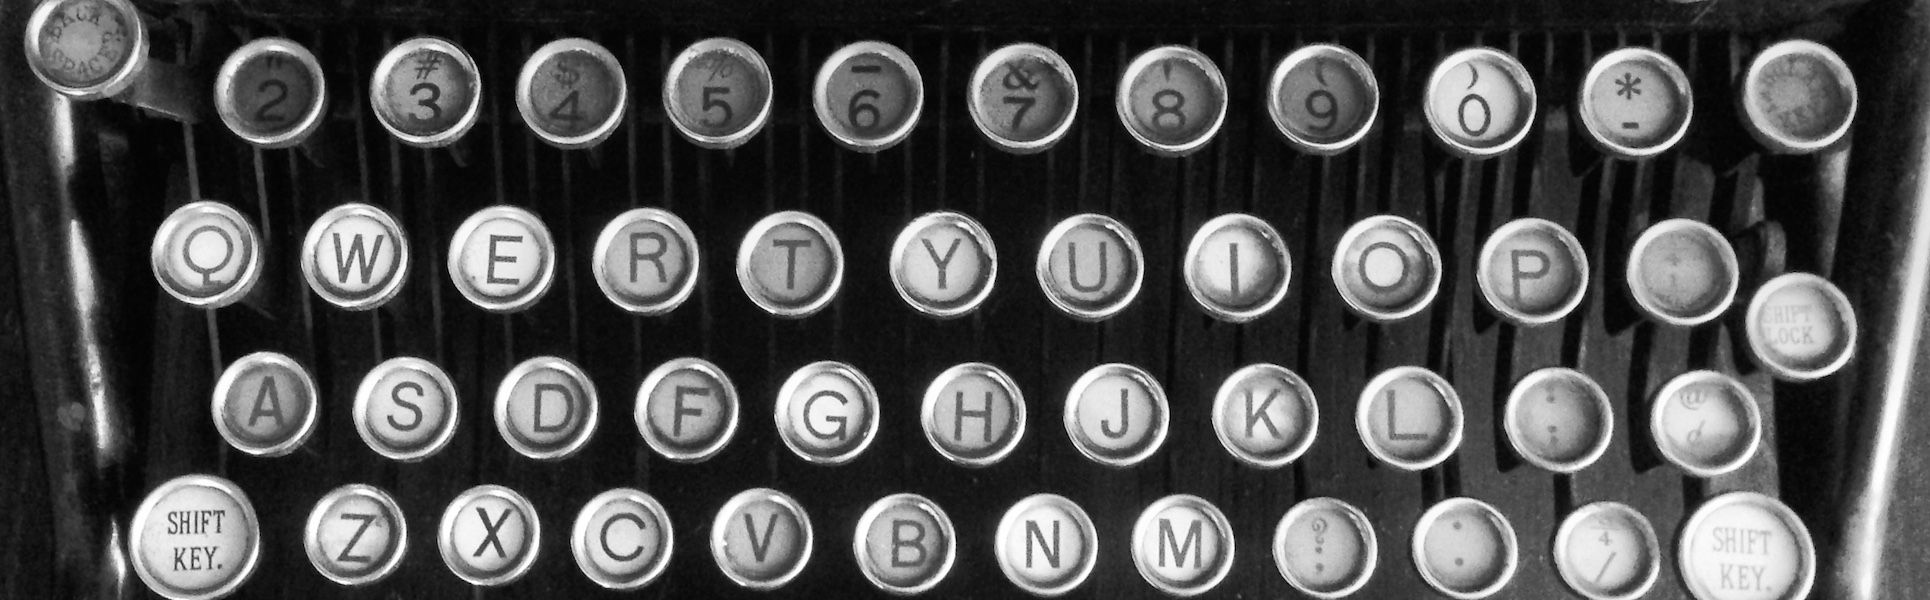 aukey typewriter keyboard